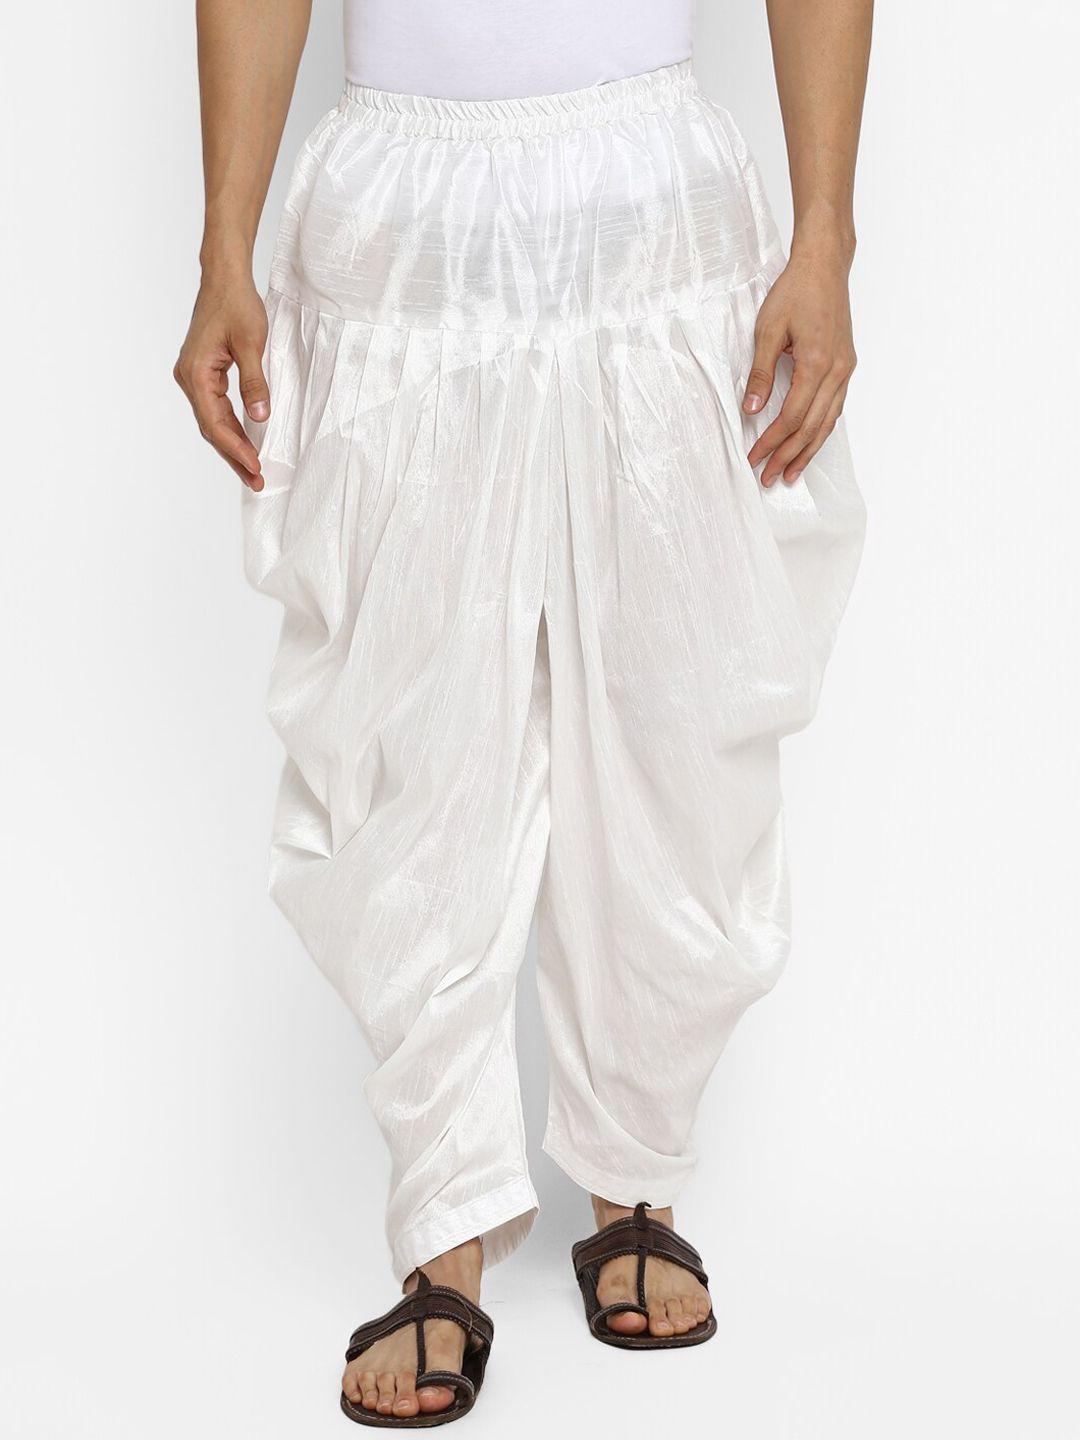 royal kurta men white solid loose-fit pyjamas